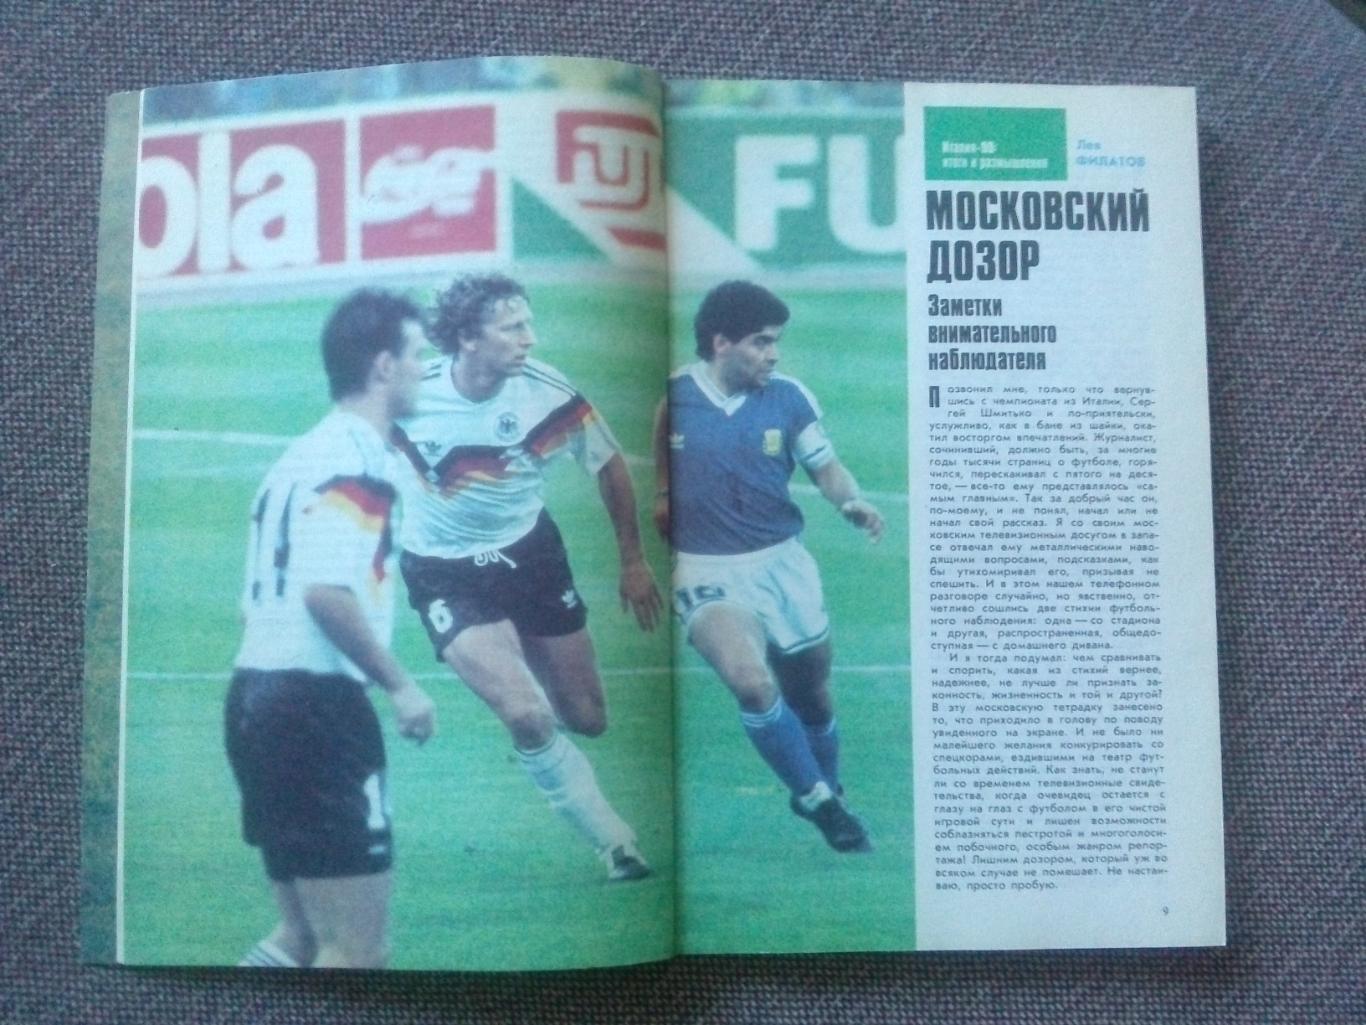 Альманах Футбол - 91 1991 г. Справочник (Спорт)ФиС(чемпионат Мира 1990) 4